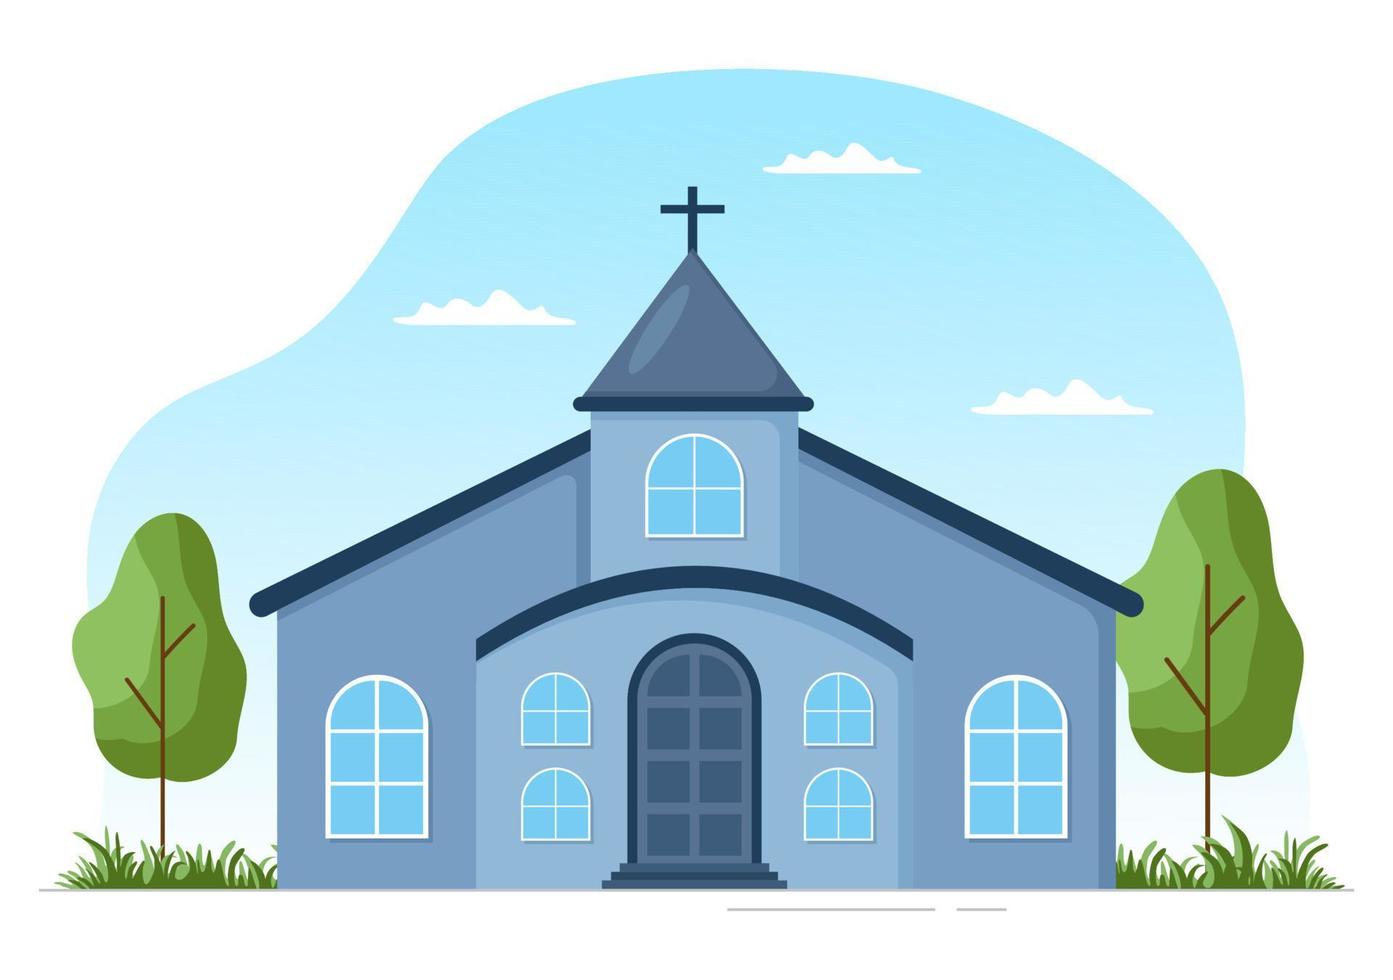 église luthérienne avec bâtiment de temple cathédrale et architecture de lieu de religion chrétienne dans une illustration de modèle dessiné à la main de dessin animé plat vecteur